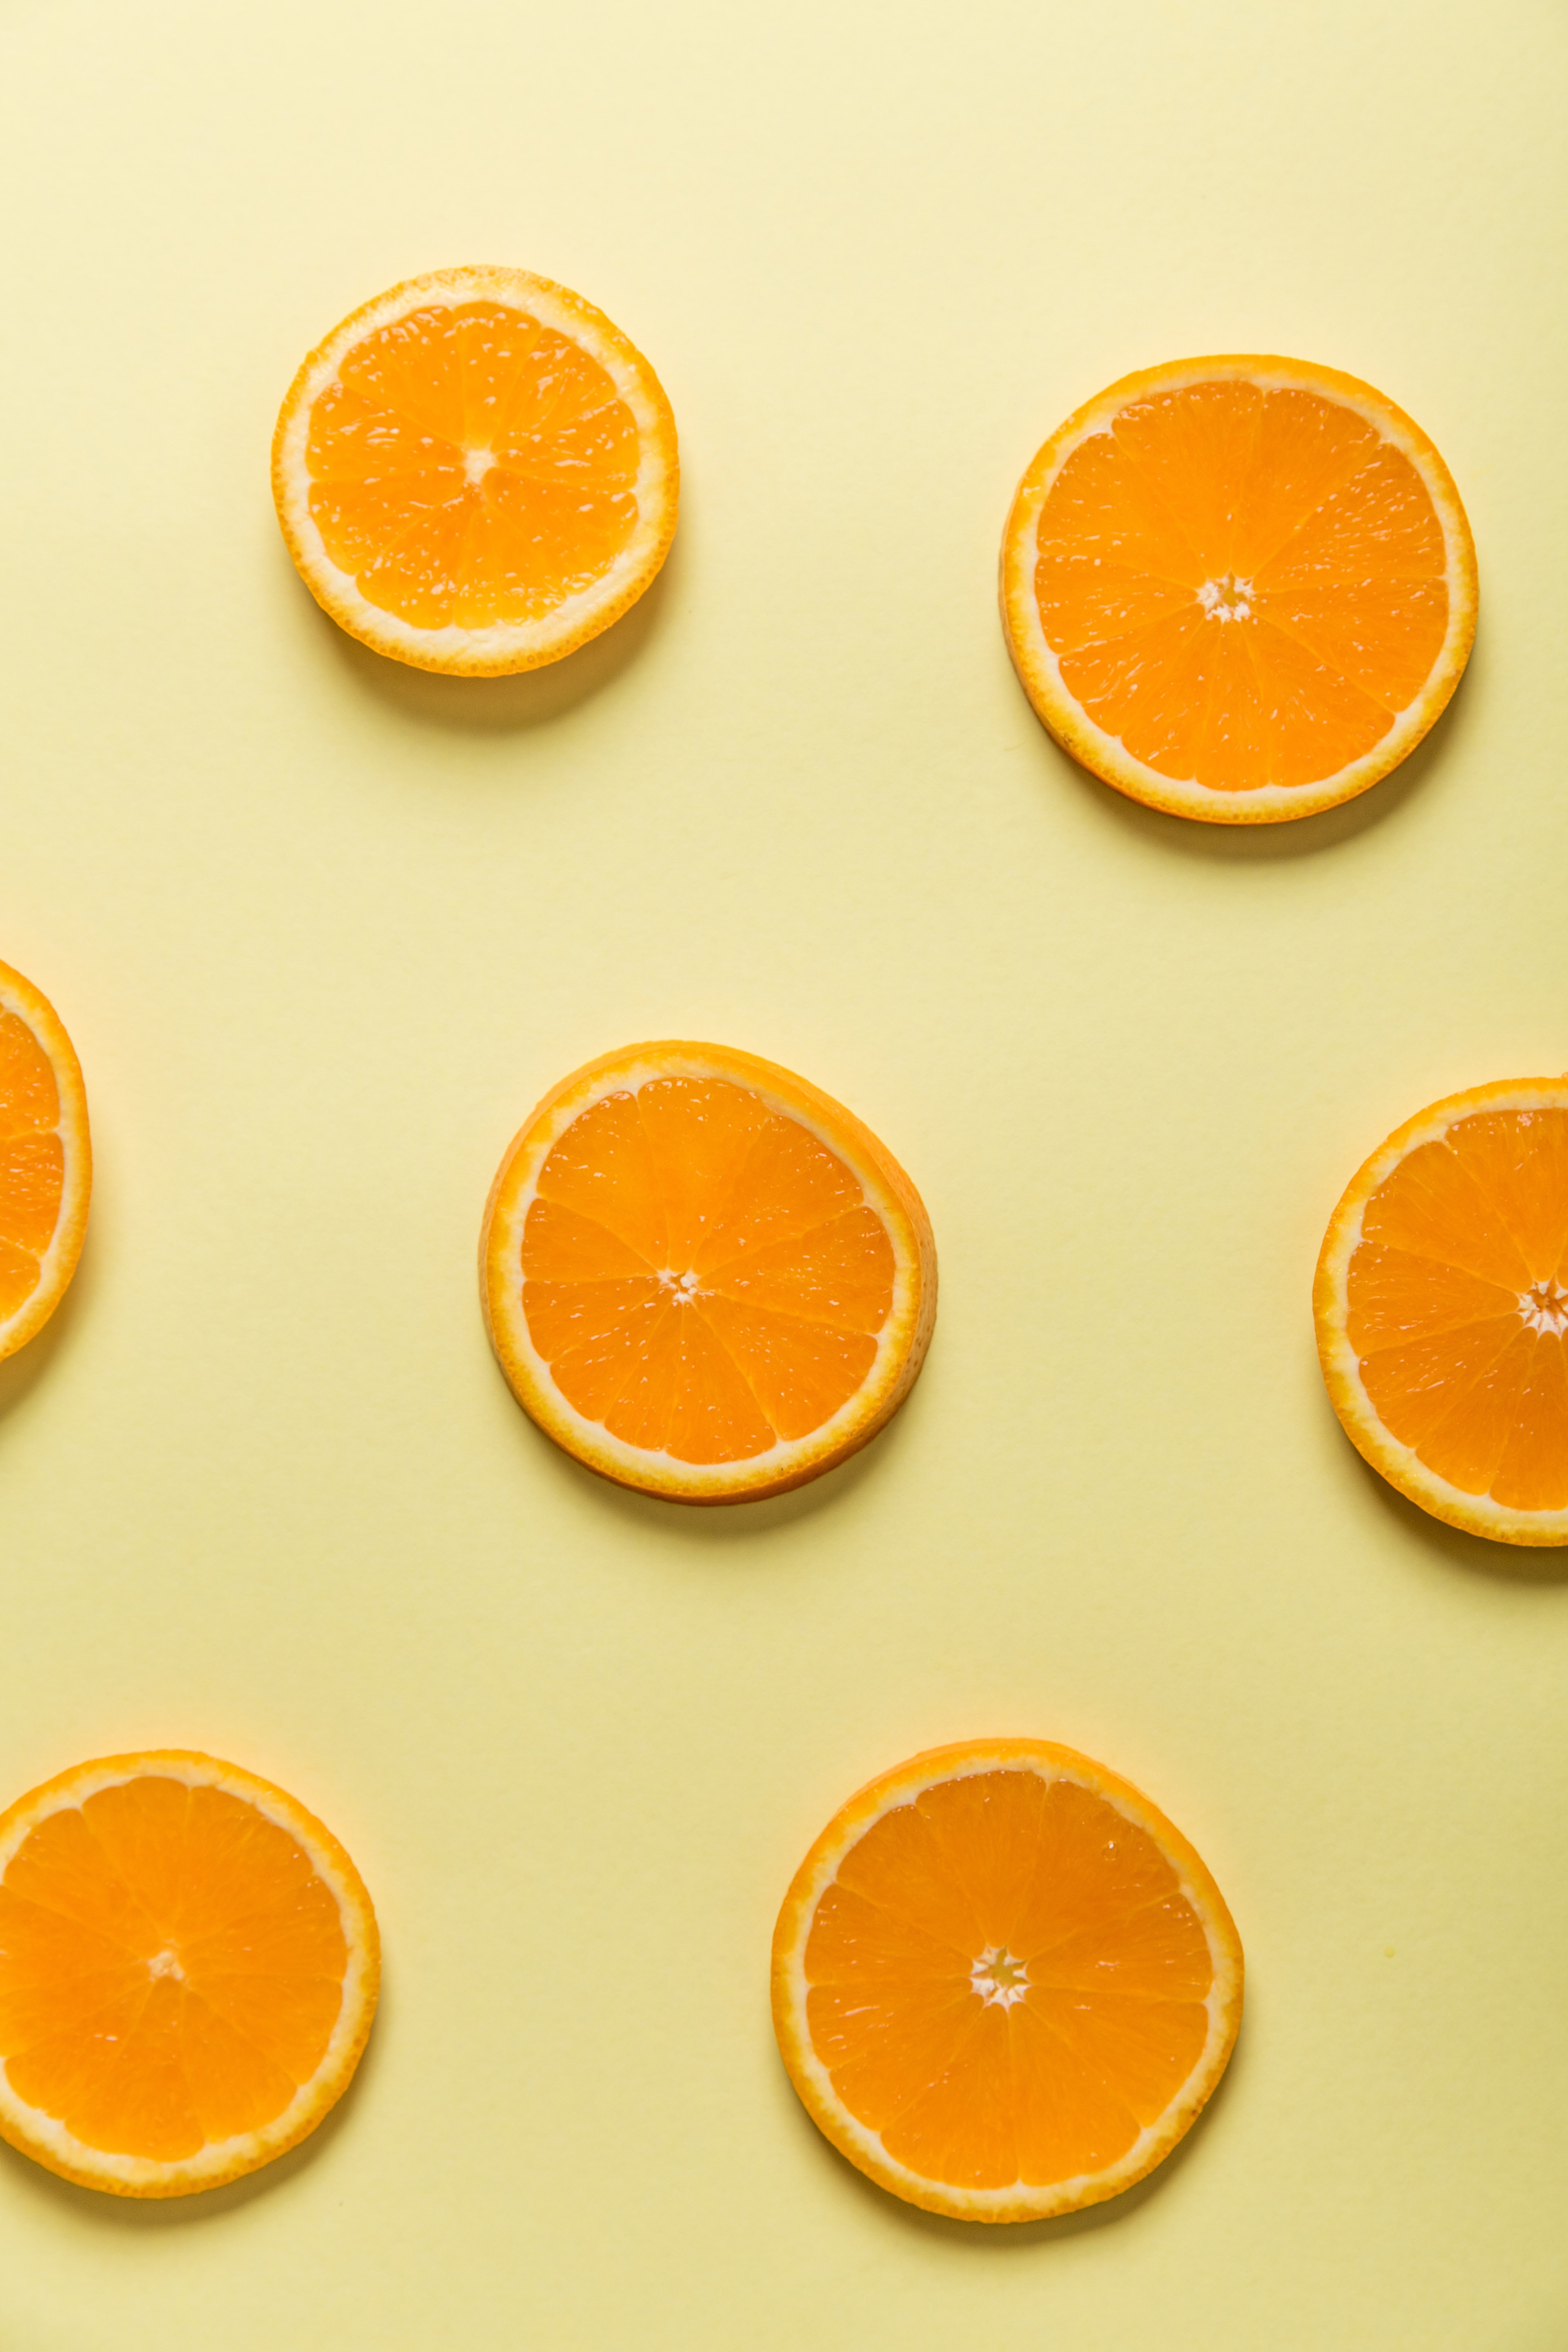 柑橘類の壁紙,オレンジ,オレンジ,黄,食物,柑橘類